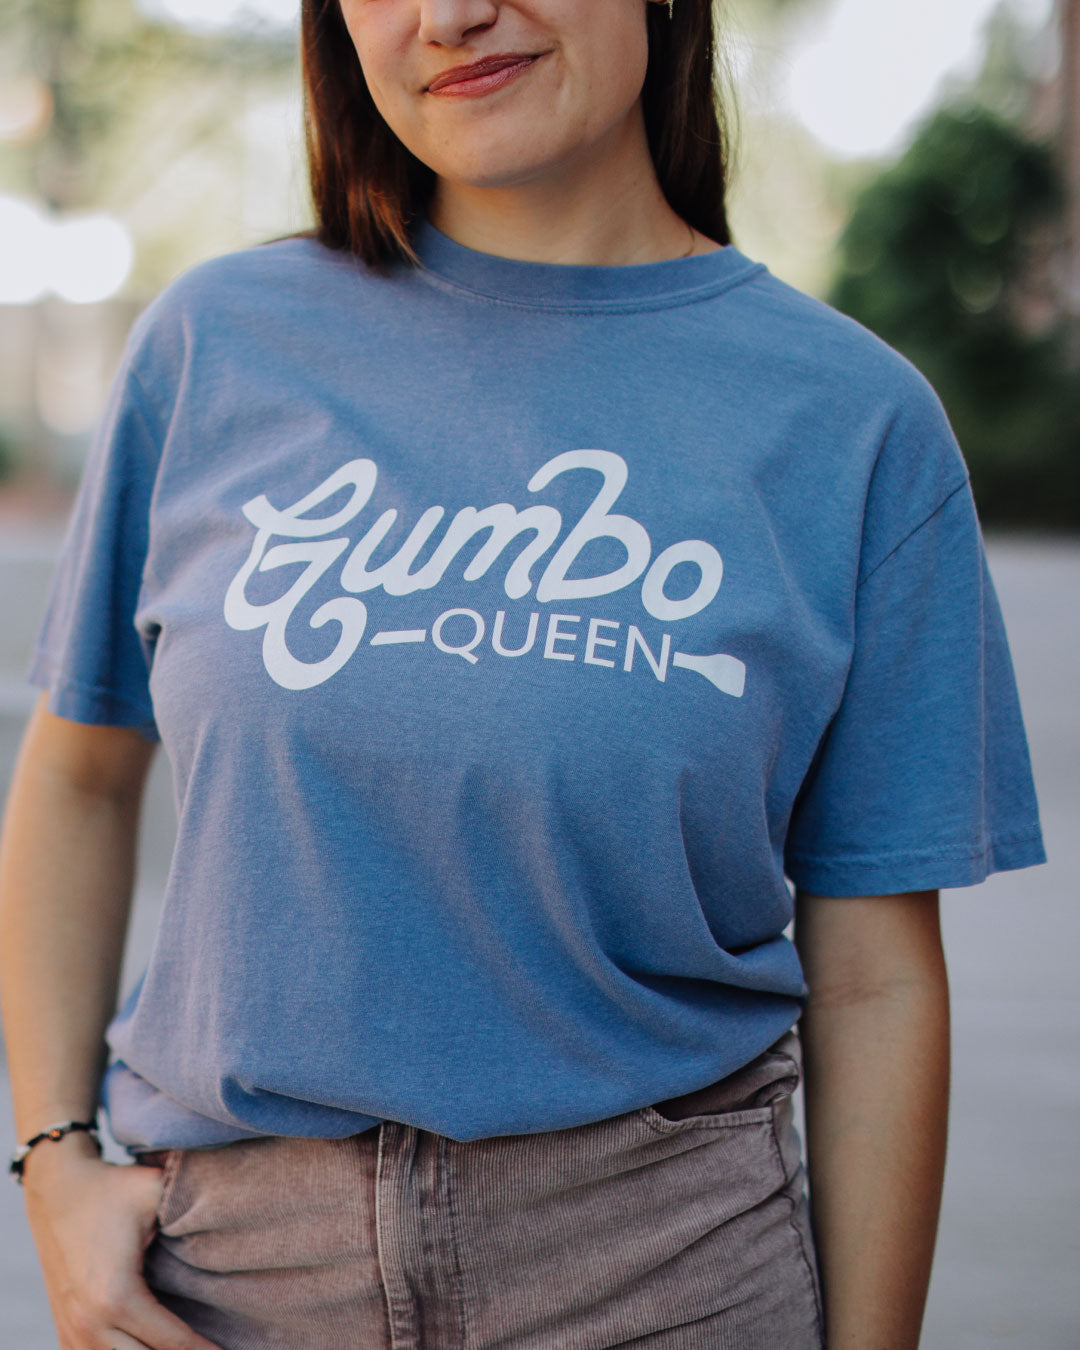 Gumbo Queen